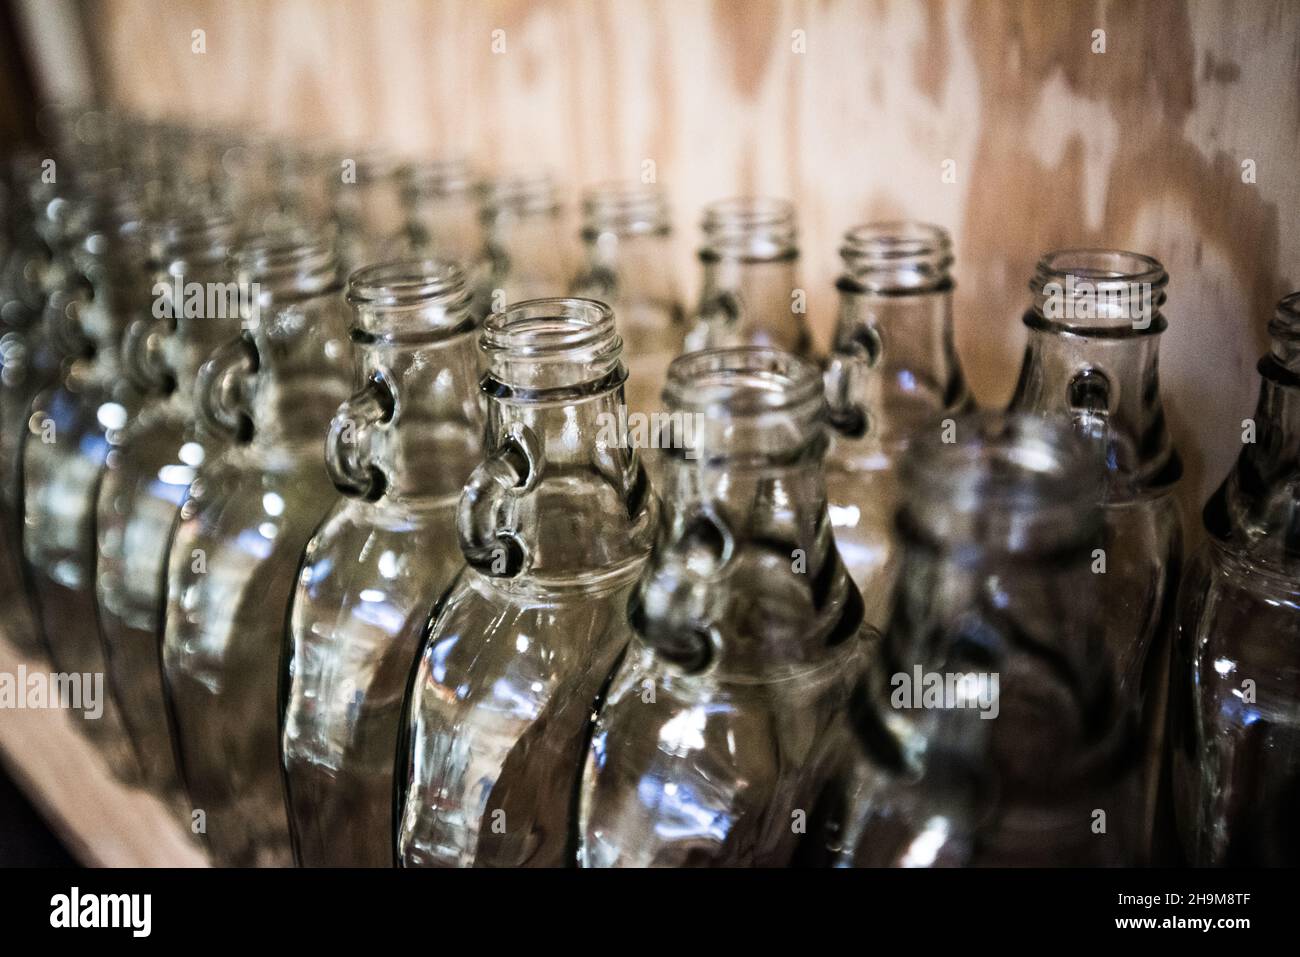 Bottiglie sterilizzate pronte per essere riempite con sciroppo d'acero, Valley View Farm, Topsfield, Massachusetts, USA Foto Stock